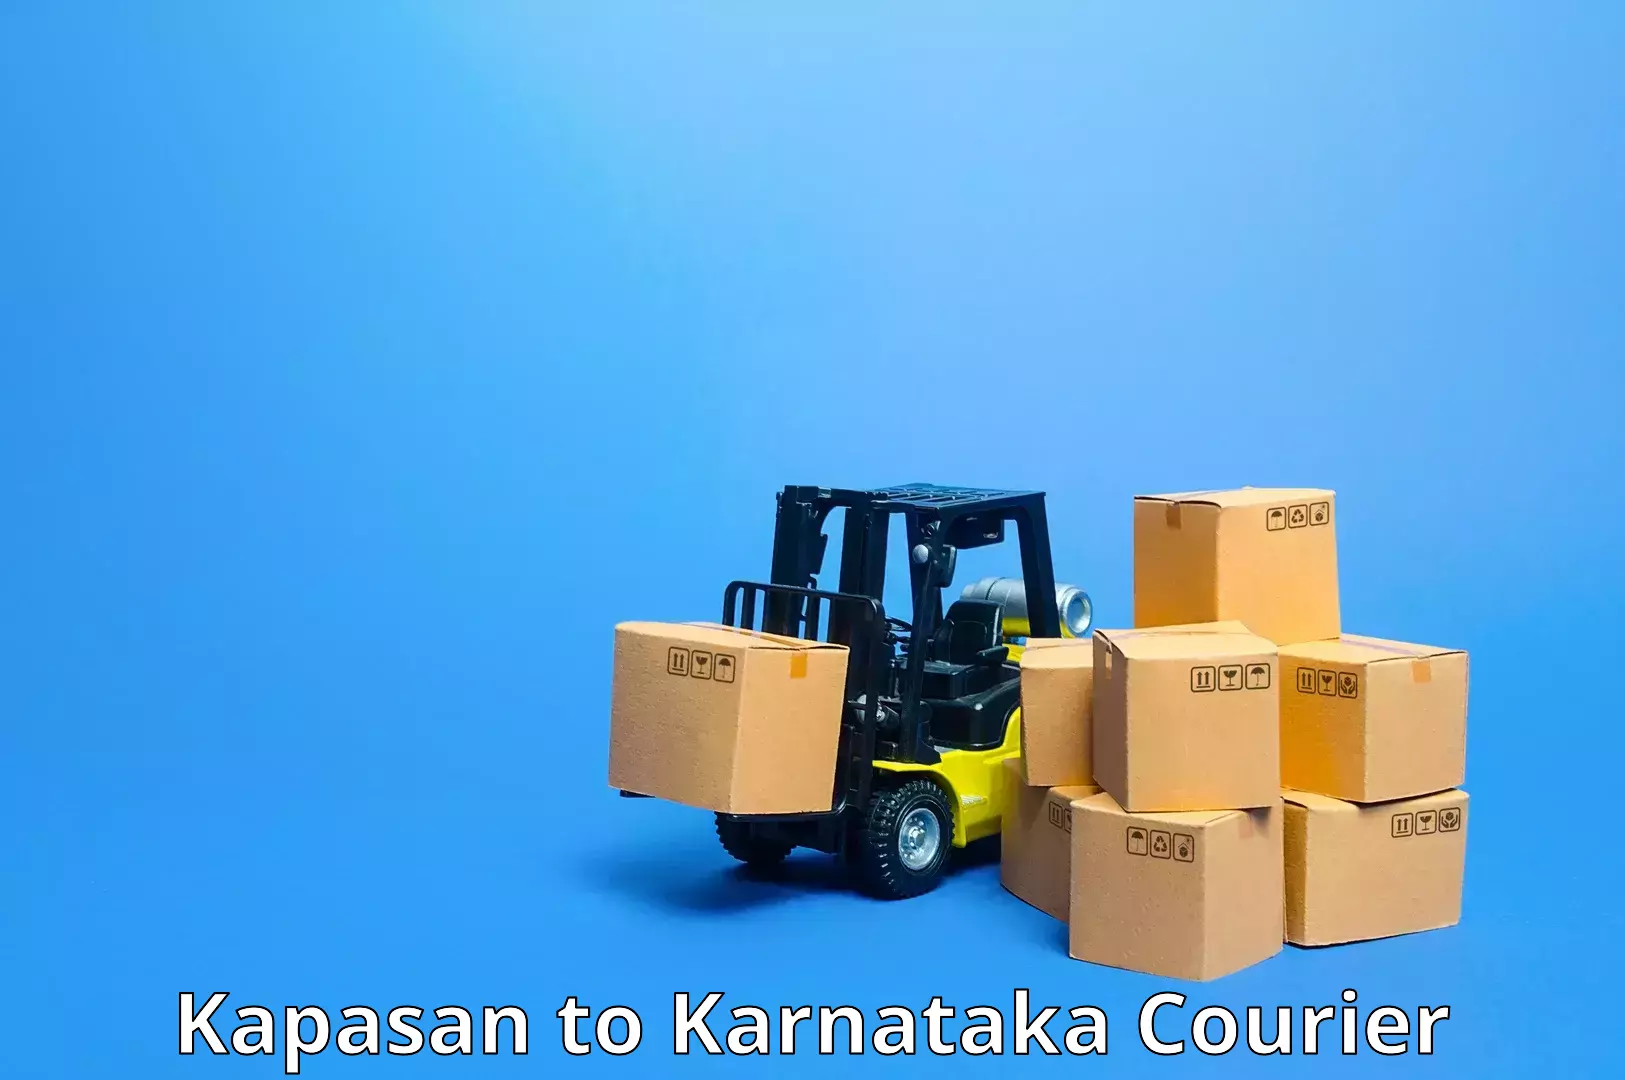 Quality courier services Kapasan to Sindagi